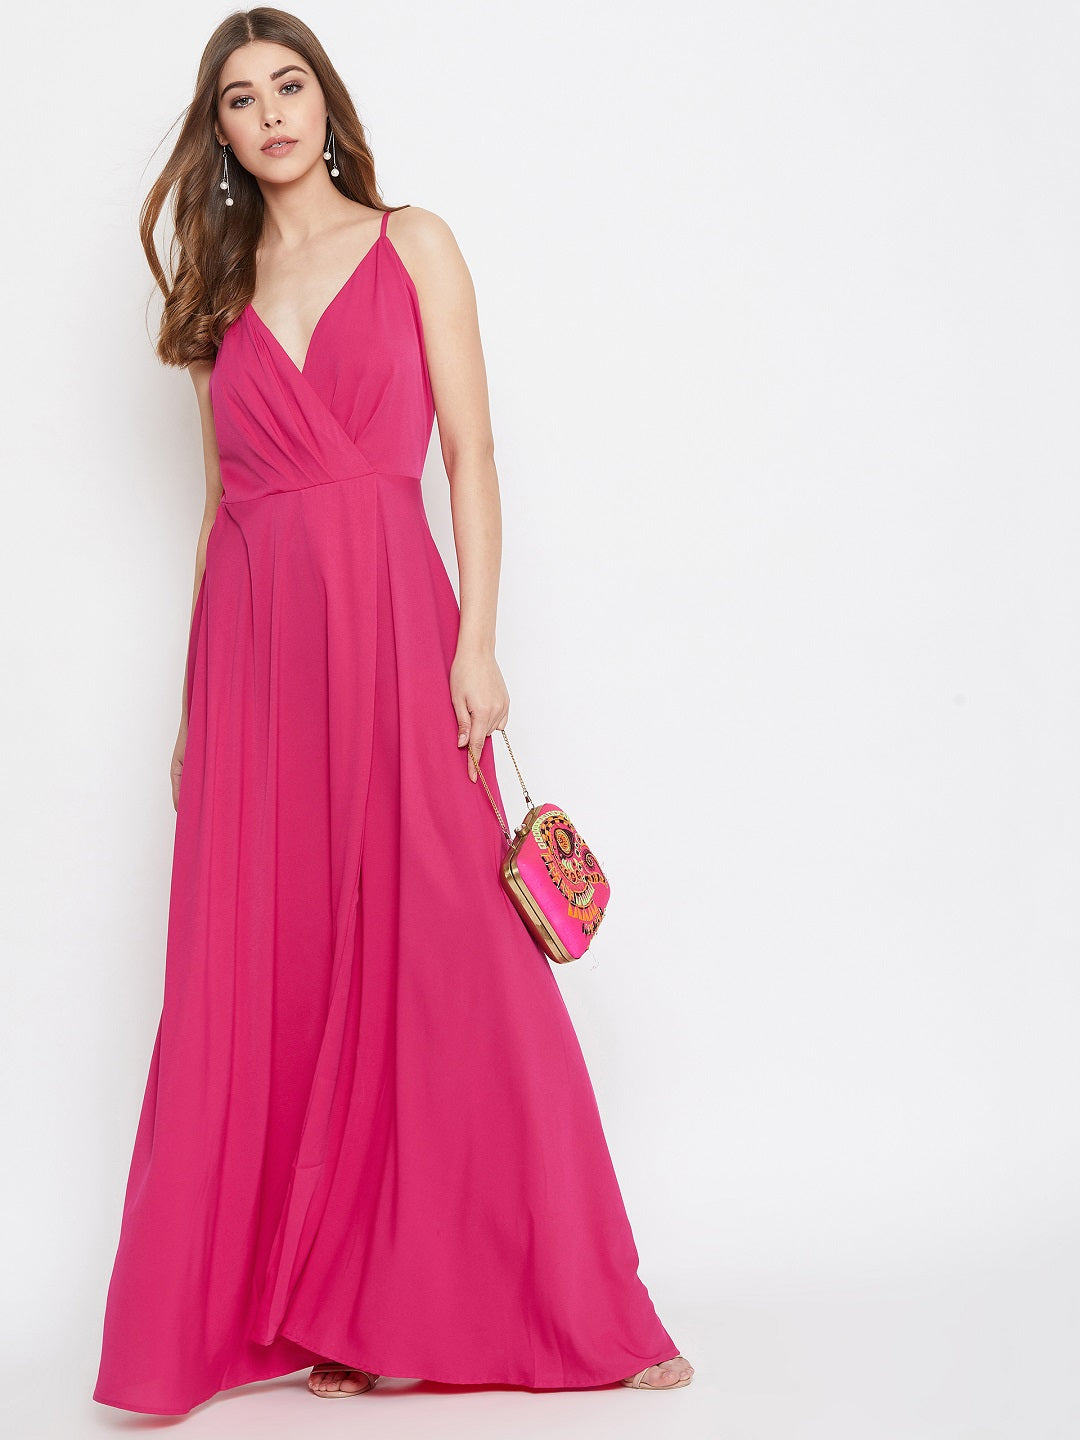 Evening Dress Wedding Pink | Pink Evening Dress Women | Pink Evening Gown  Women - Evening Dresses - Aliexpress